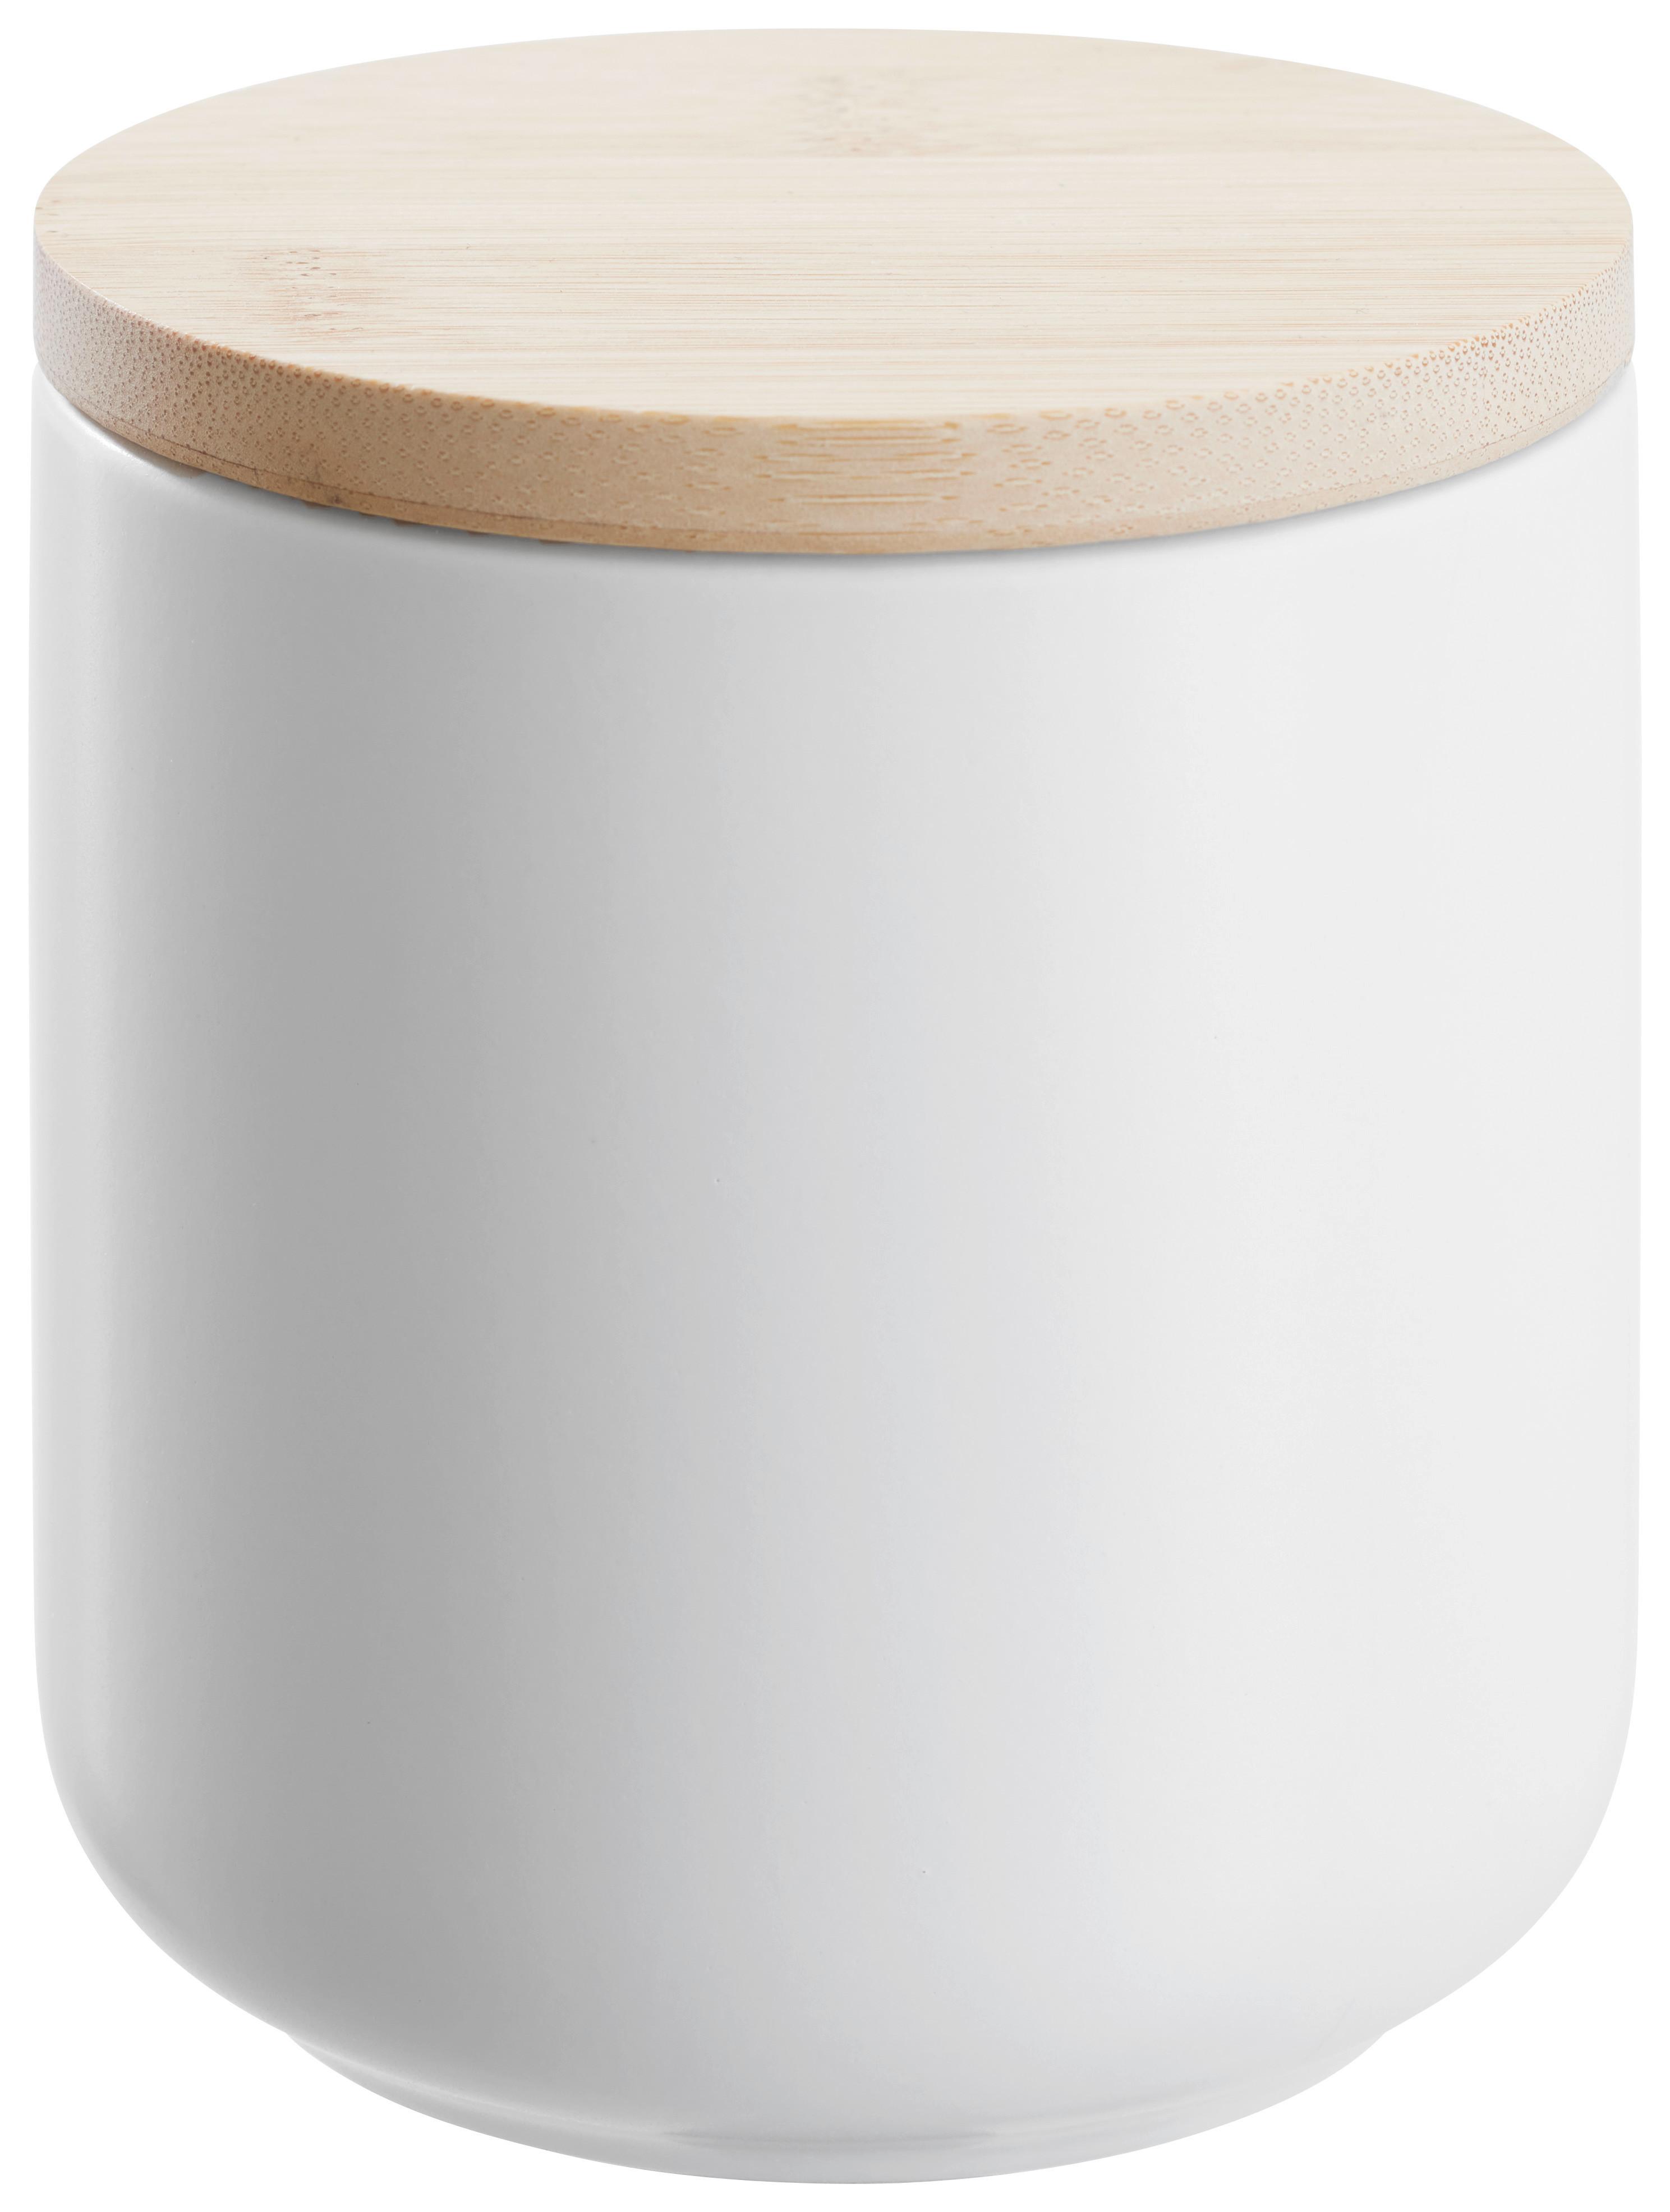 Vorratsdose Svea 0,5L in Weiß - Naturfarben/Weiß, MODERN, Holz/Keramik (10/10cm) - Premium Living